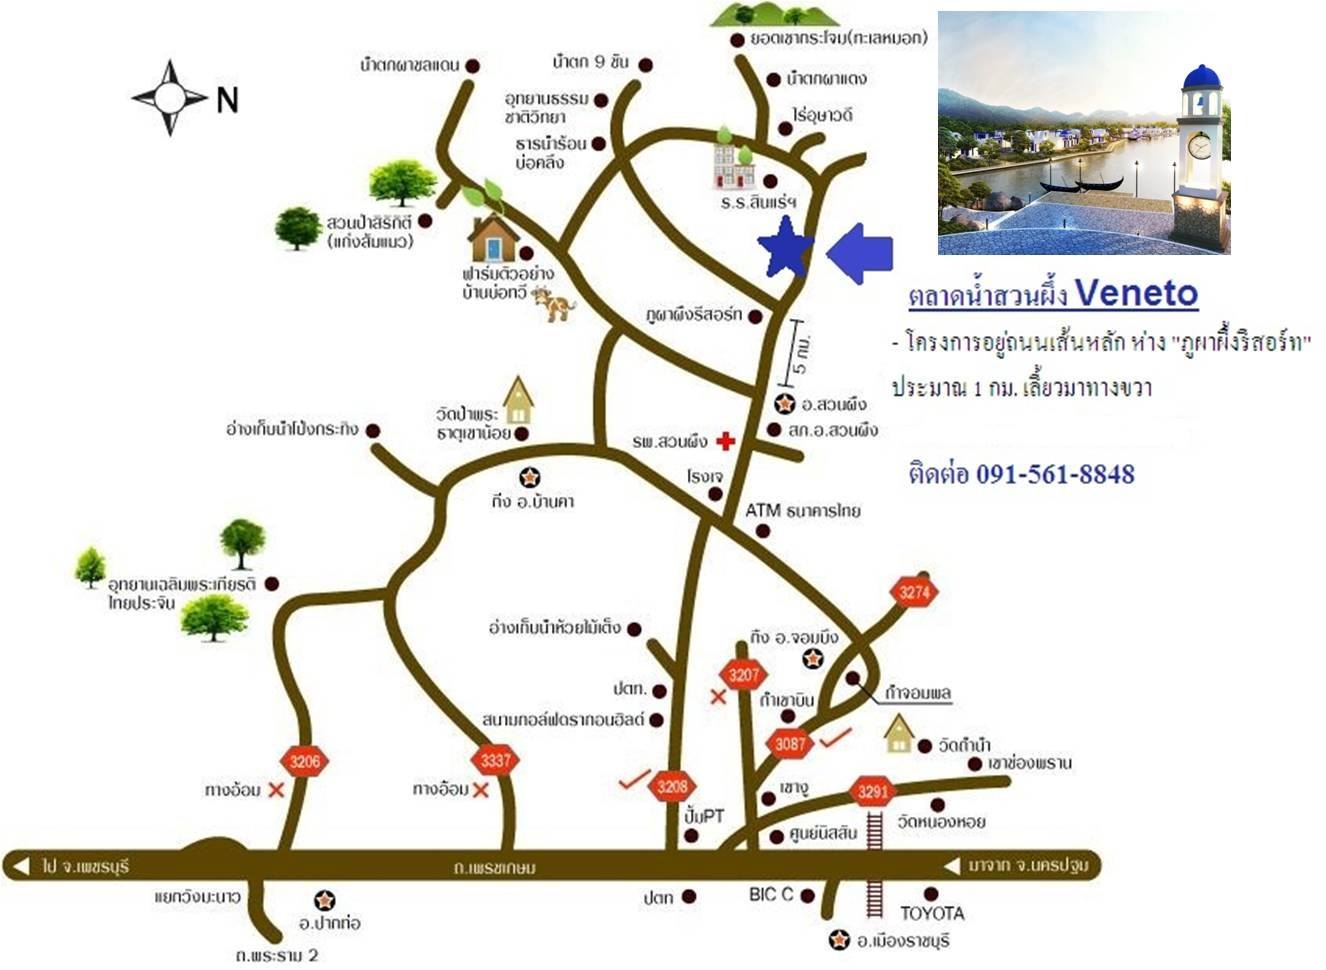 แผนที่ ตลาดน้ำสวนผึ้ง Veneto บรรยากาศดี โรแมนติก ตกแต่งแบบซานโตรินี จังหวัดราชบุรี